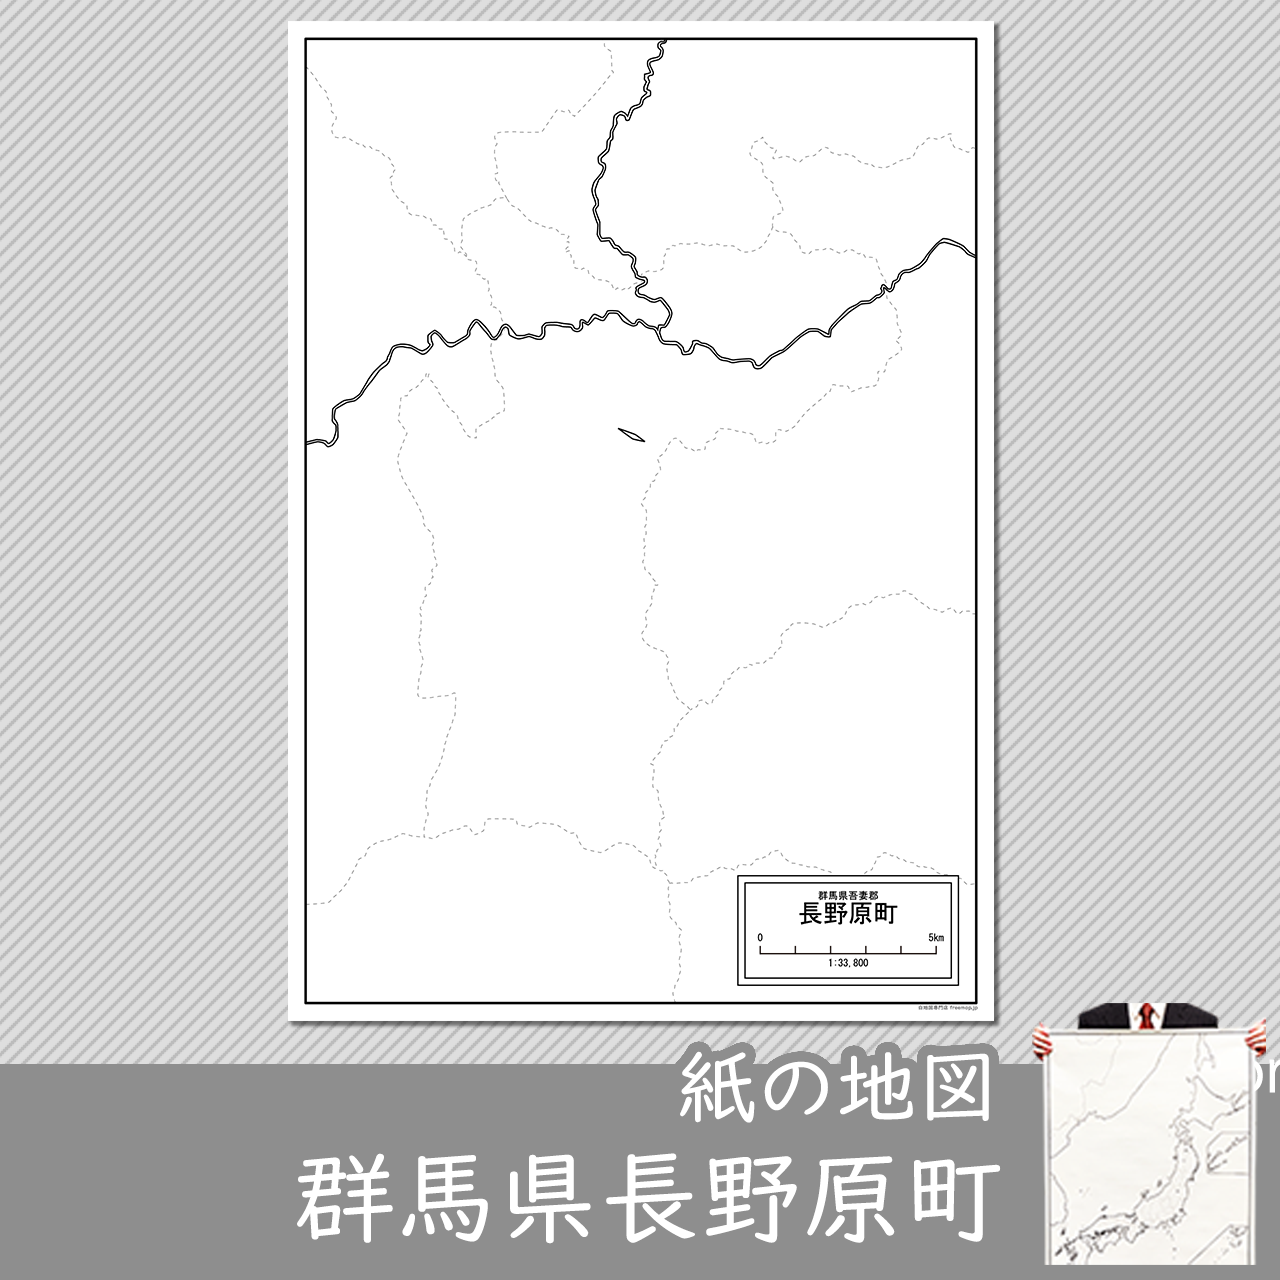 長野原町の紙の白地図のサムネイル